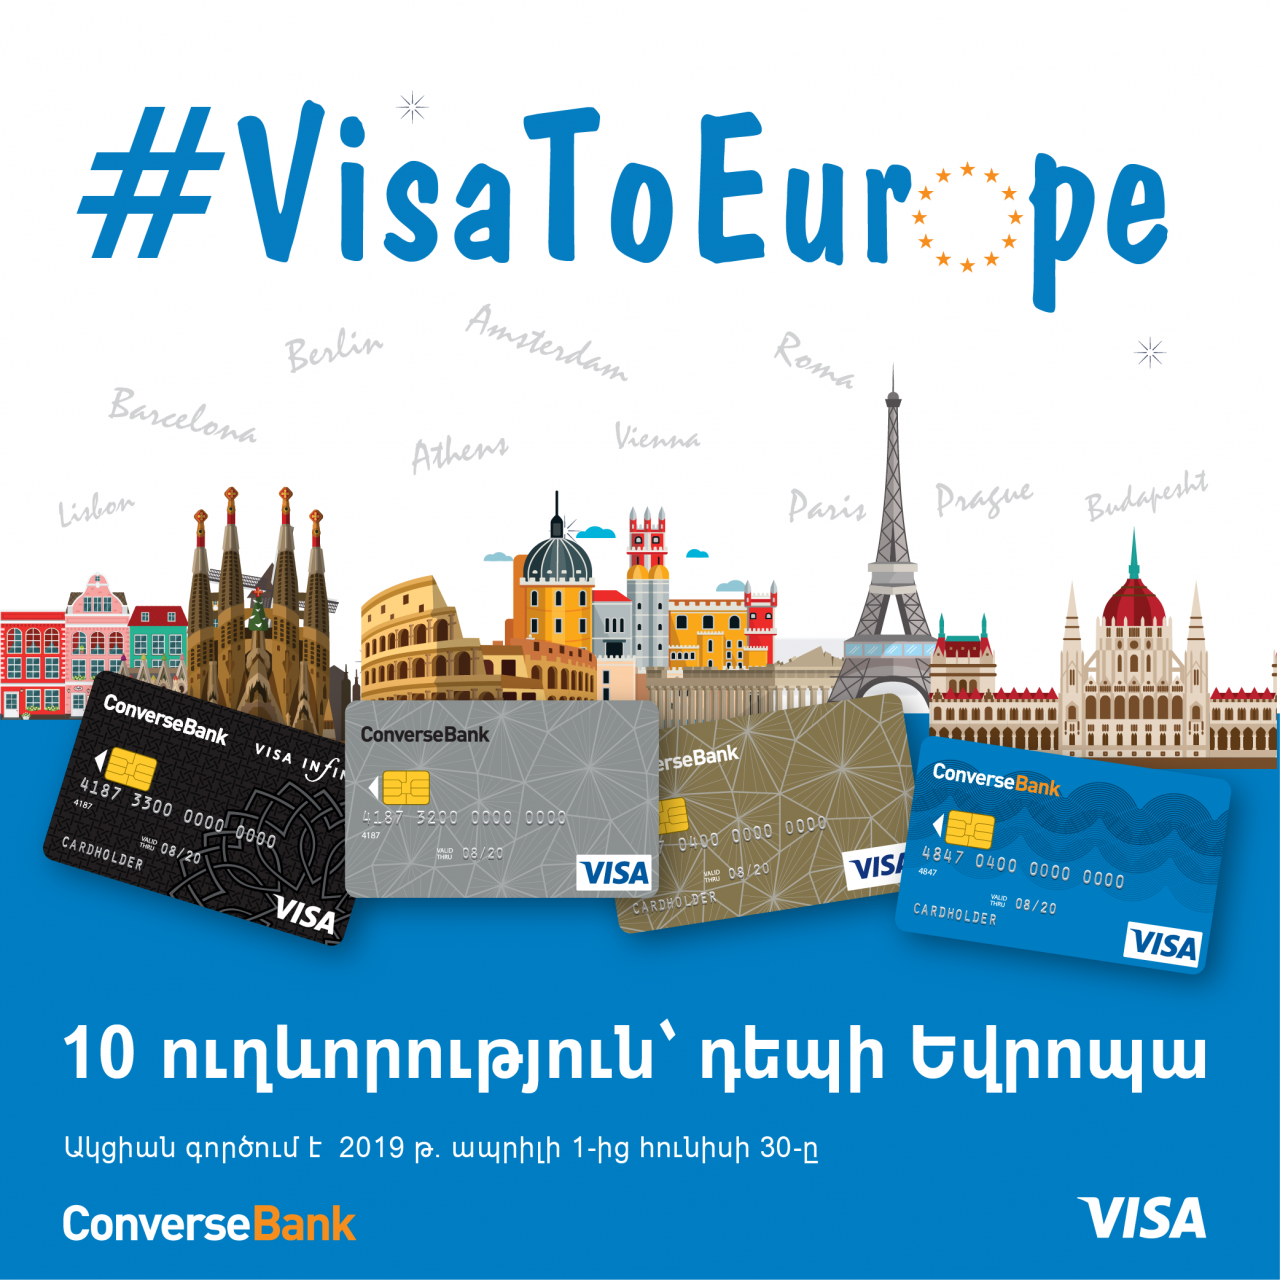 Կոնվերս բանկ. 10 ուղեգիր դեպի Եվրոպա՝ #ՎիզաԴեպիԵվրոպա ակցիայի շրջանակում